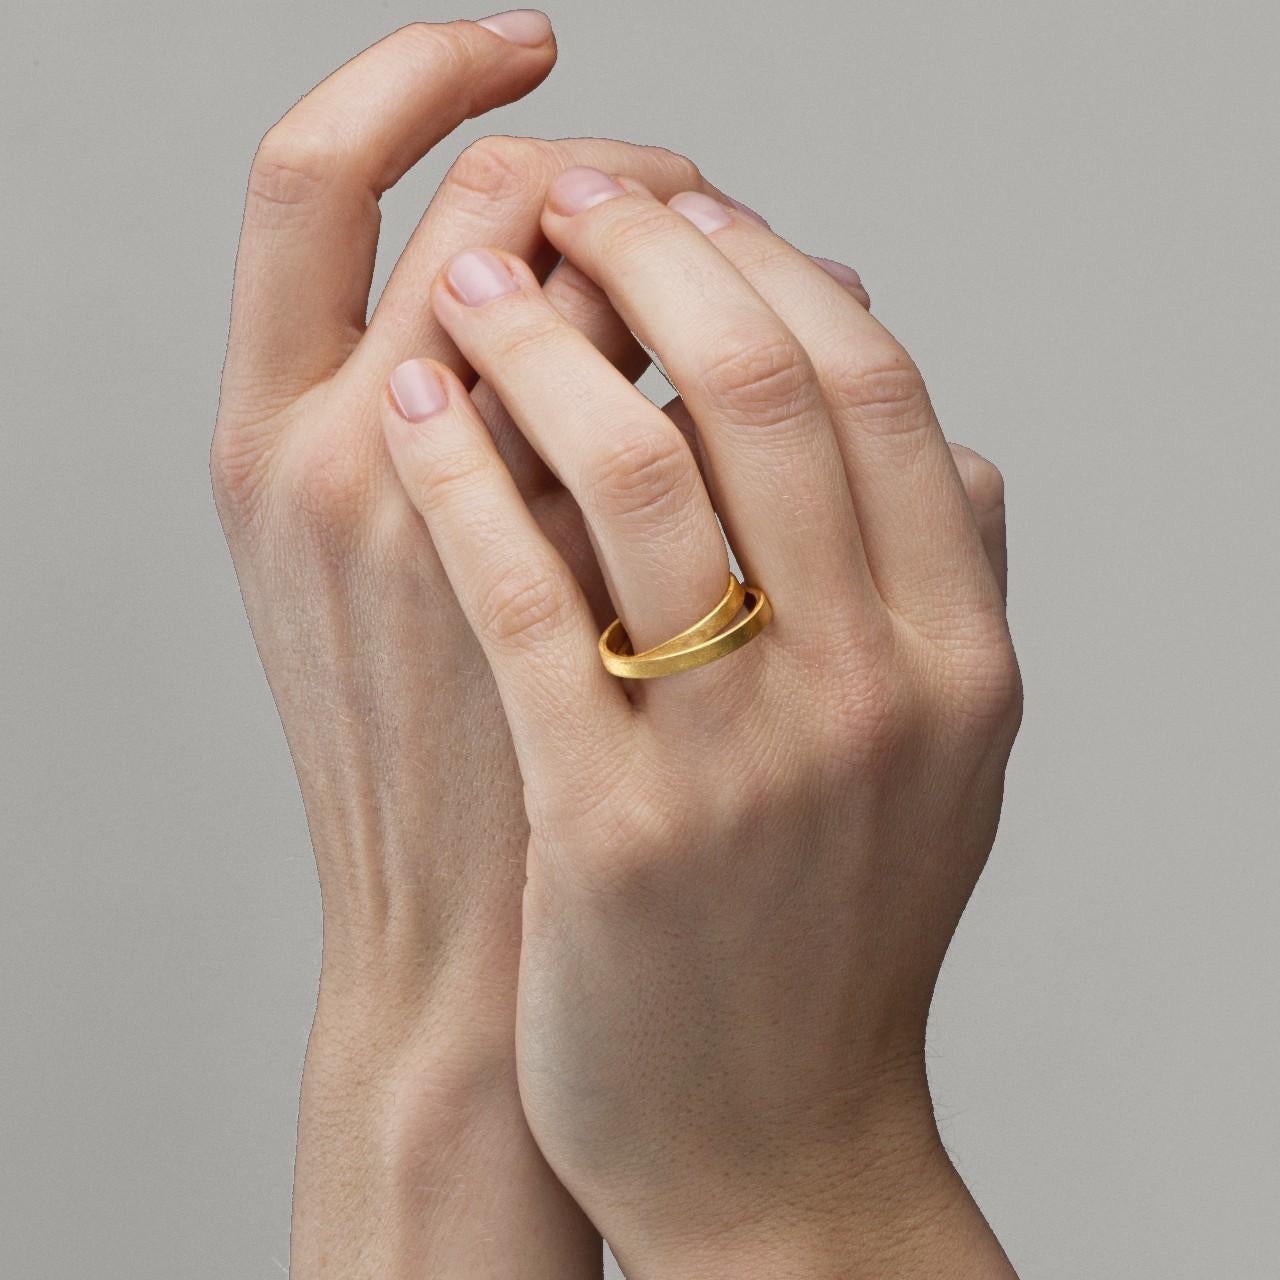 Alex Jona Design-Kollektion, handgefertigt in Italien, Doppelring aus 18 Karat mattiertem Gelbgold.
Ringgröße: 12EU/6US. Abmessungen: H 0.77in/19.6mm, B 0.71in  /  18mm, D 0.17in/4.52mm.
Die Juwelen von Alex Jona zeichnen sich nicht nur durch ihr